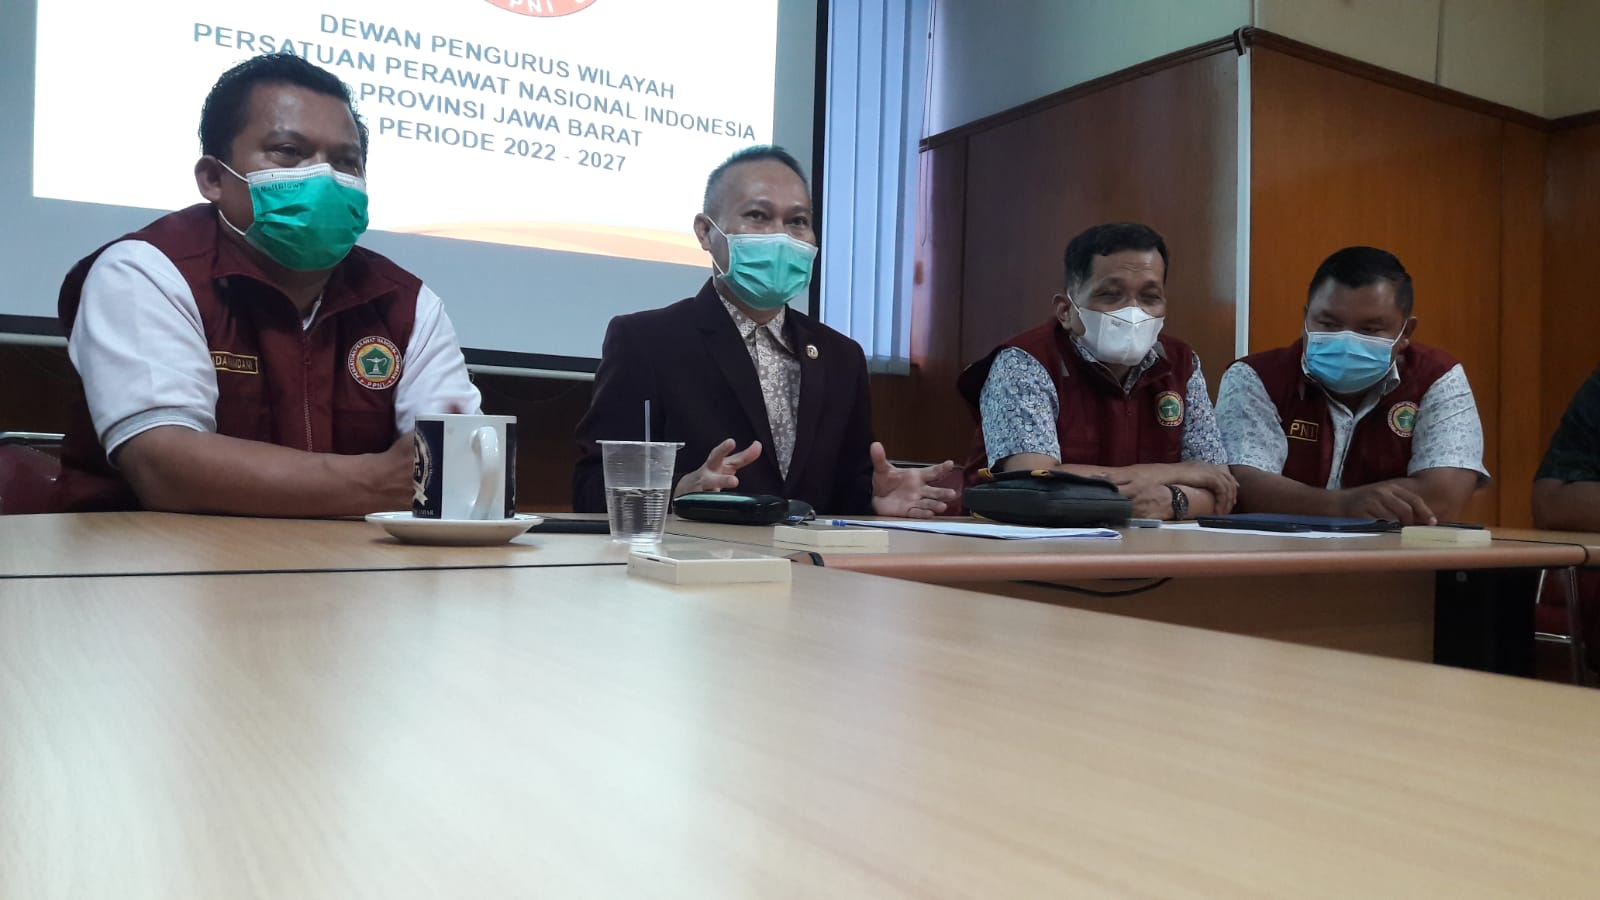 Dewan Pengurus Wilayah Persatuan Perawat Nasional Indonesia (DPW PPNI) Jawa Barat (Jabar), melakukan akselerasi percepatan vaksin Covid-19 guna membantu program pemerintah dalam penanggulangan pandemi ini.